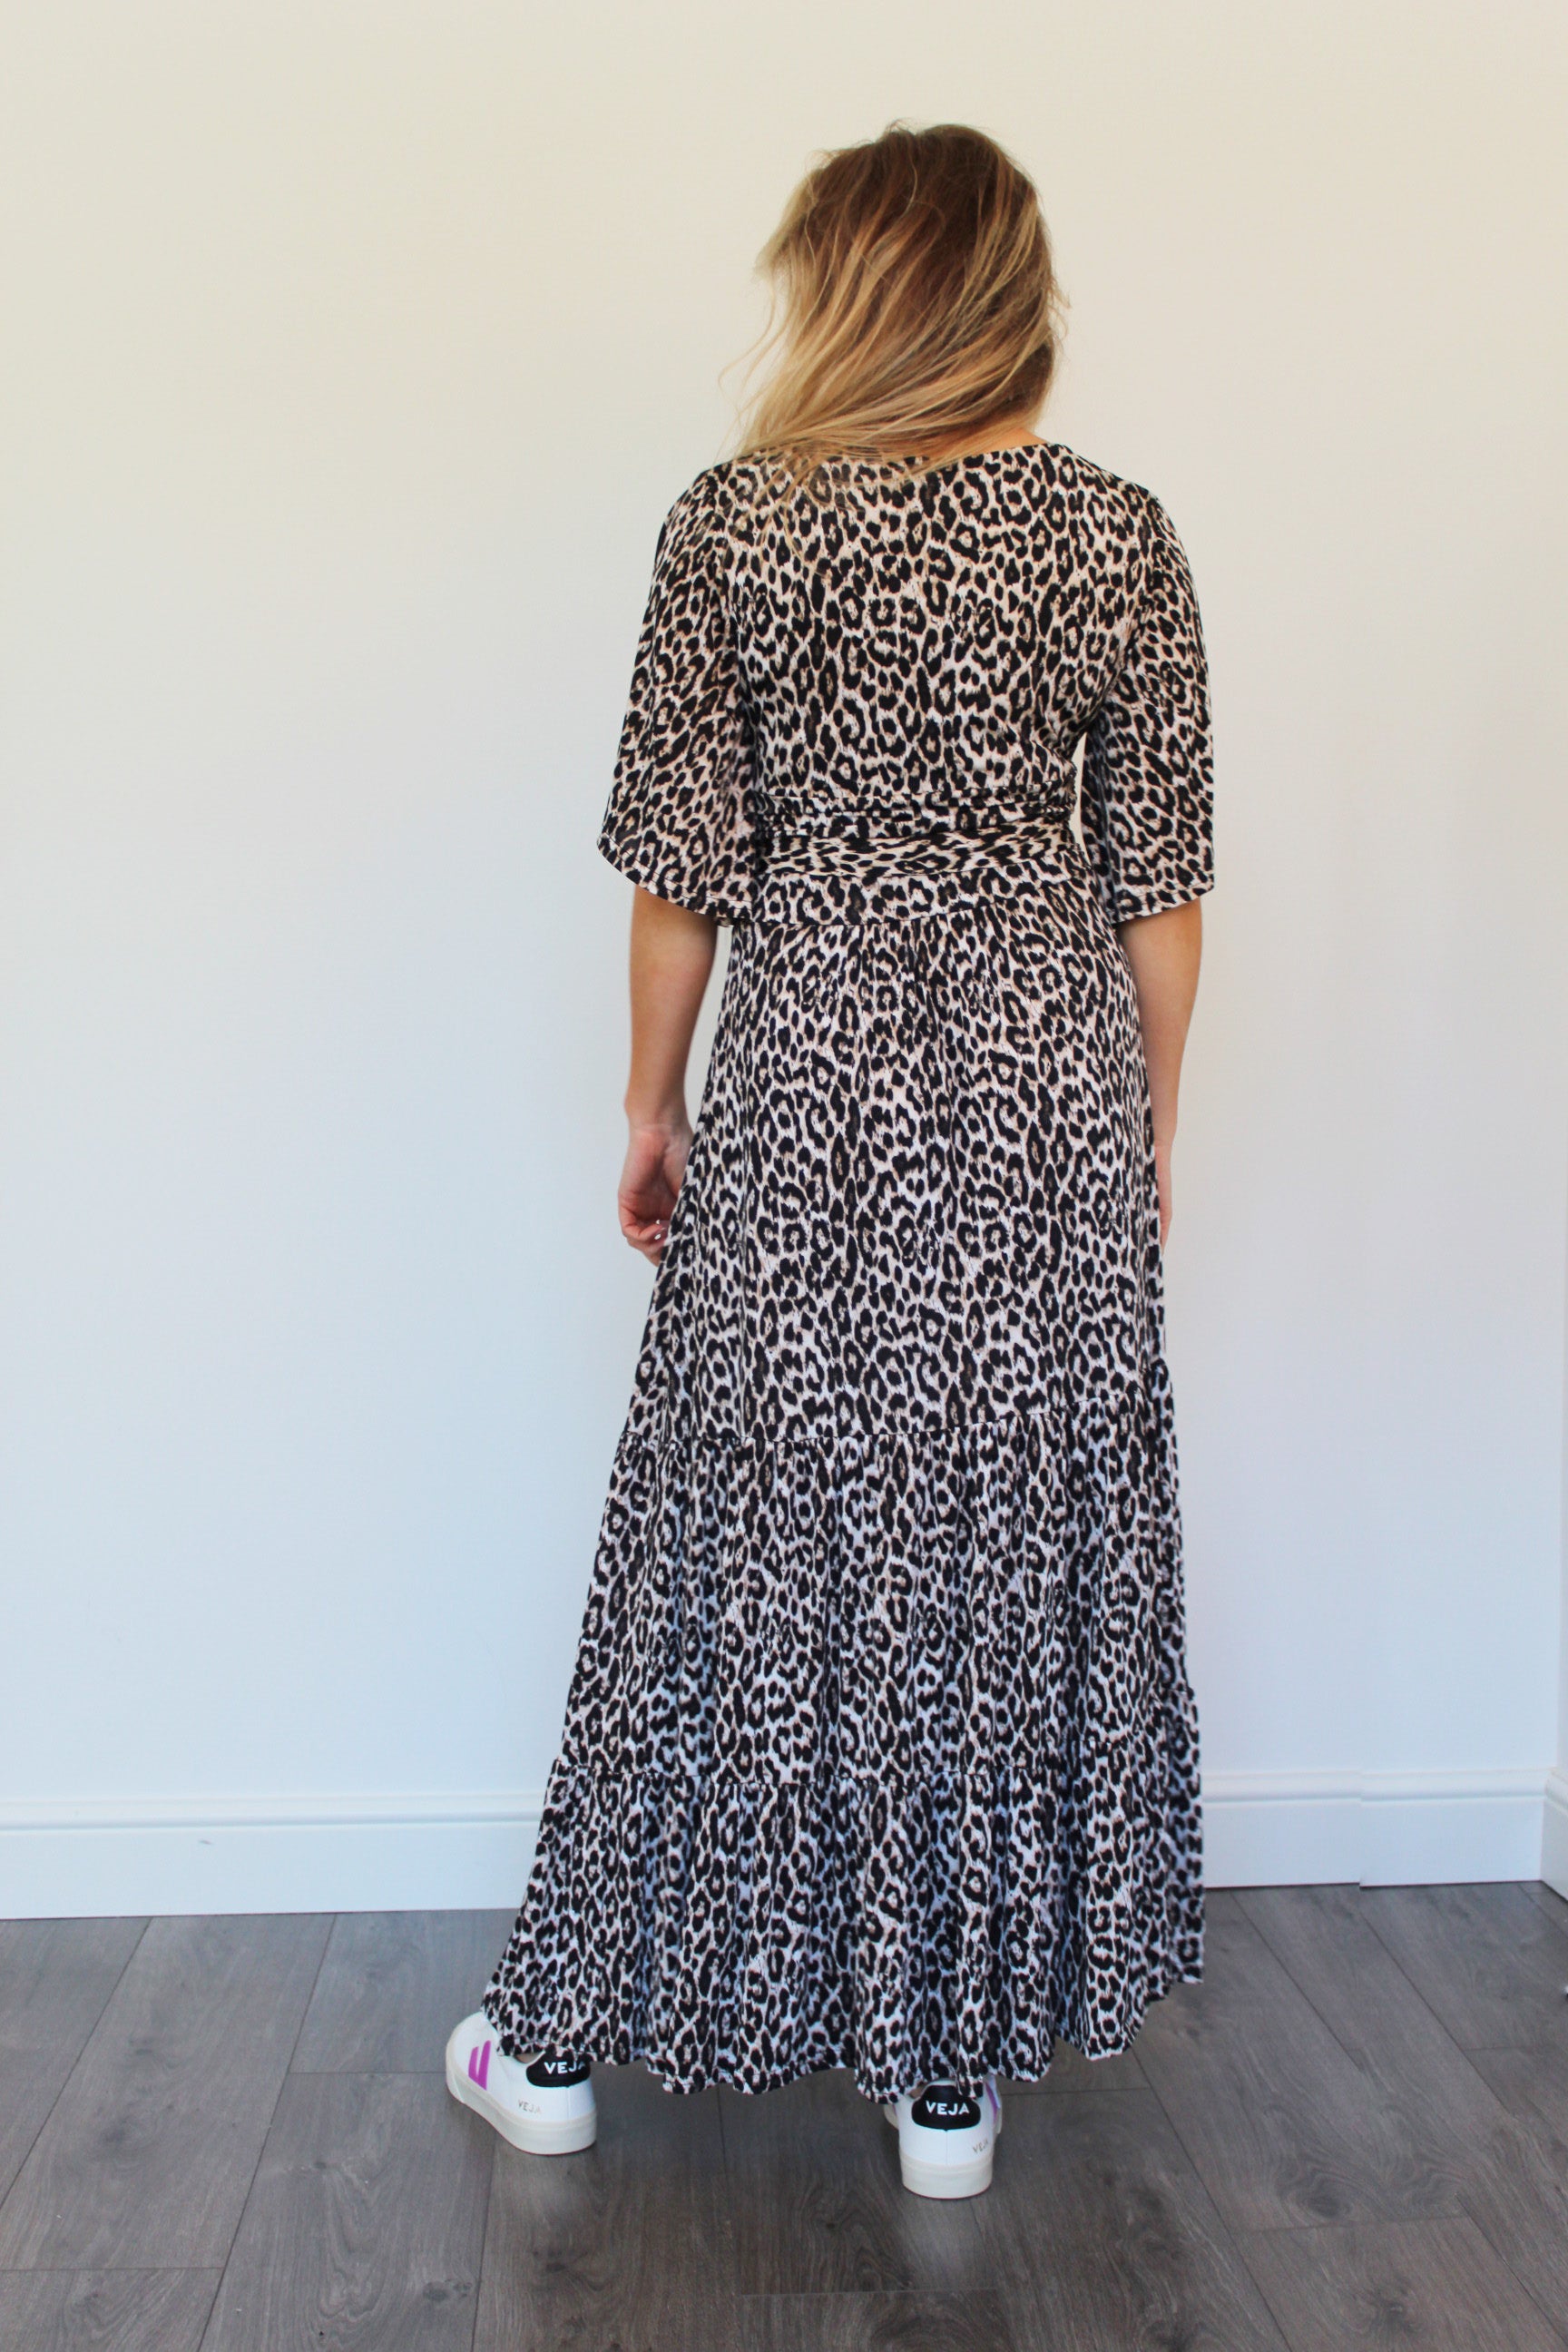 ONJENU Tilly Maxi Dress in Beige Leopard